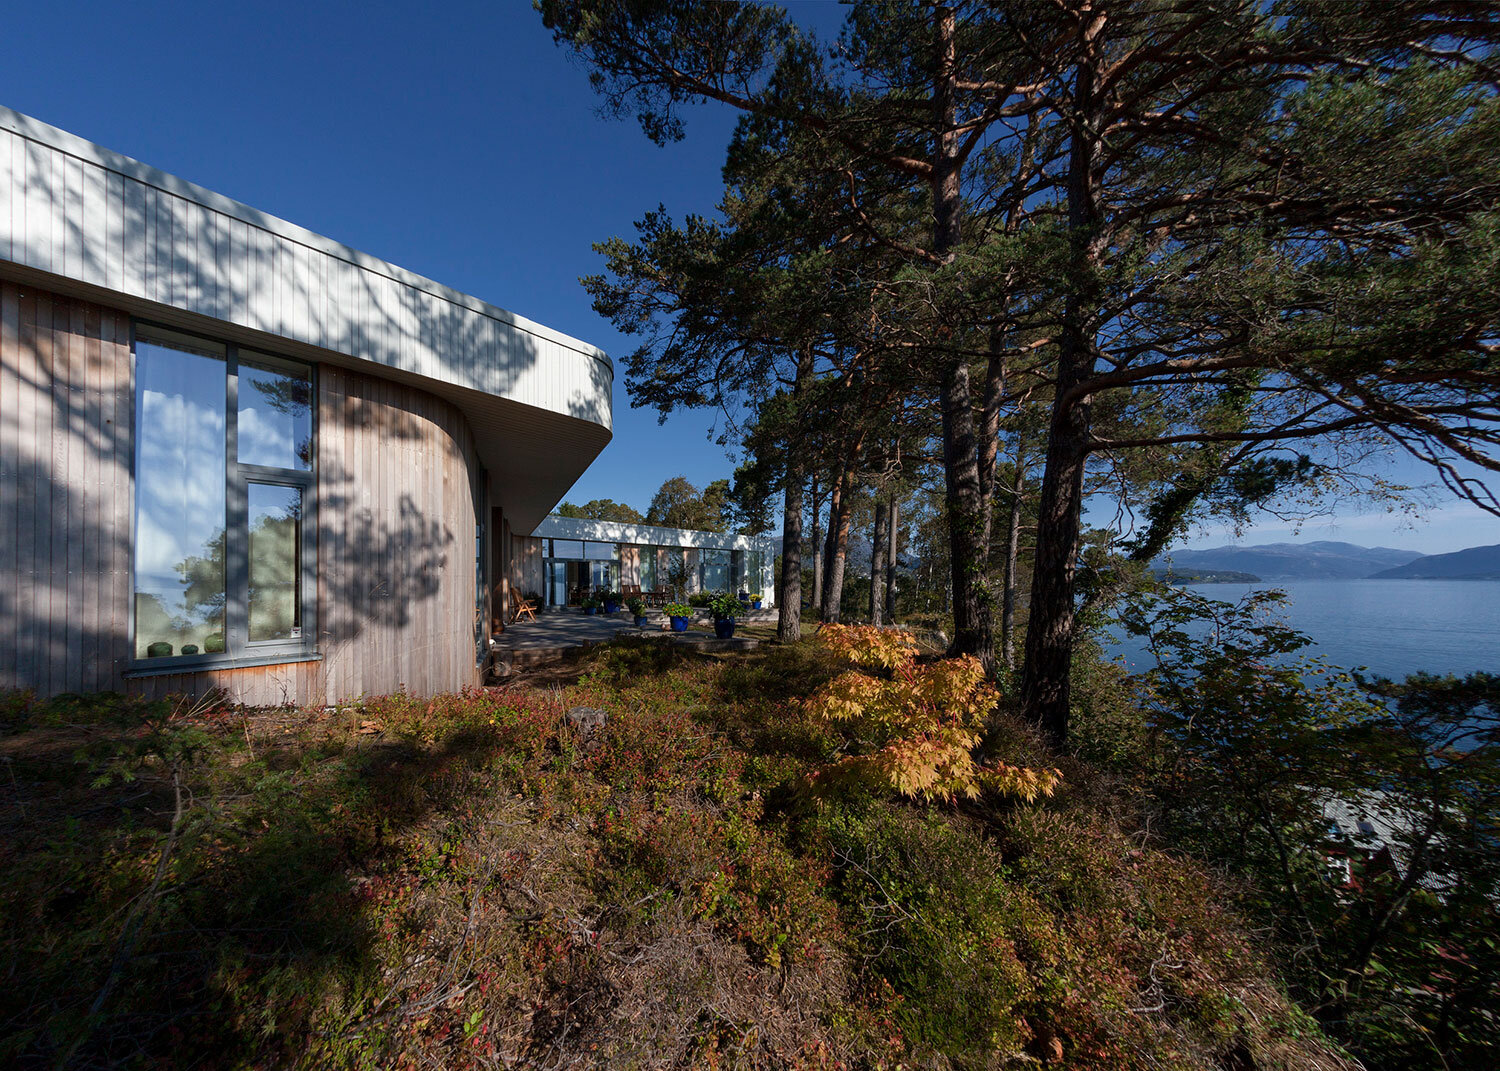  Villa M, Os, Norway 